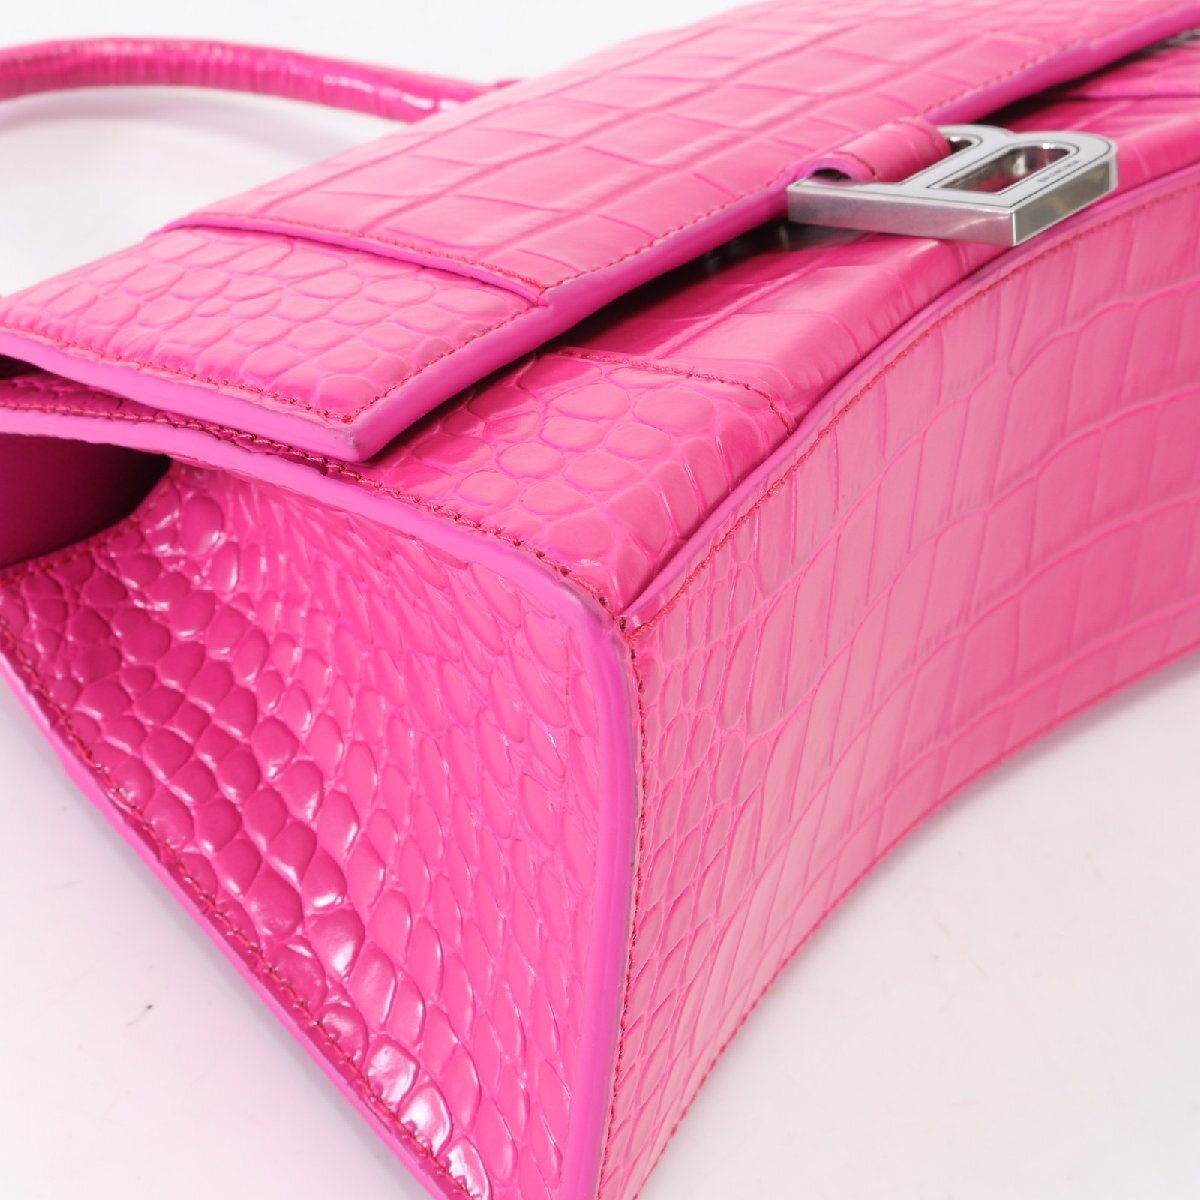 1 иен # не использовался # Balenciaga # Hour стакан маленький крокодил en Boss кожа ручная сумочка большая сумка Pink Lady -sEFM L3-7